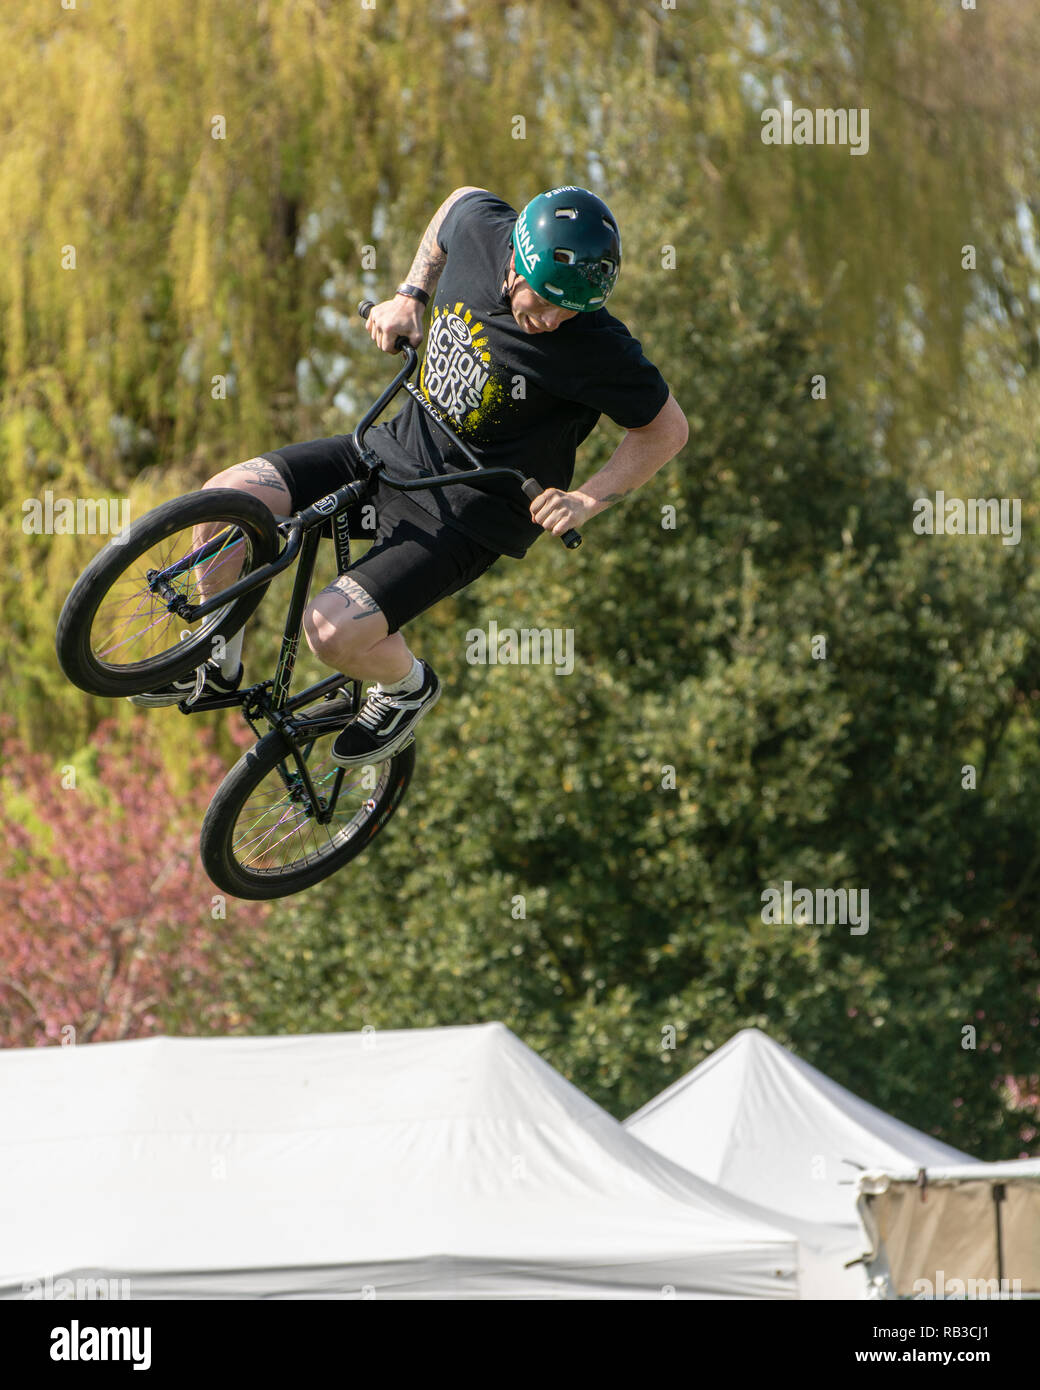 Le BMX rider effectue des cascades à country fair, attire beaucoup d'air Banque D'Images